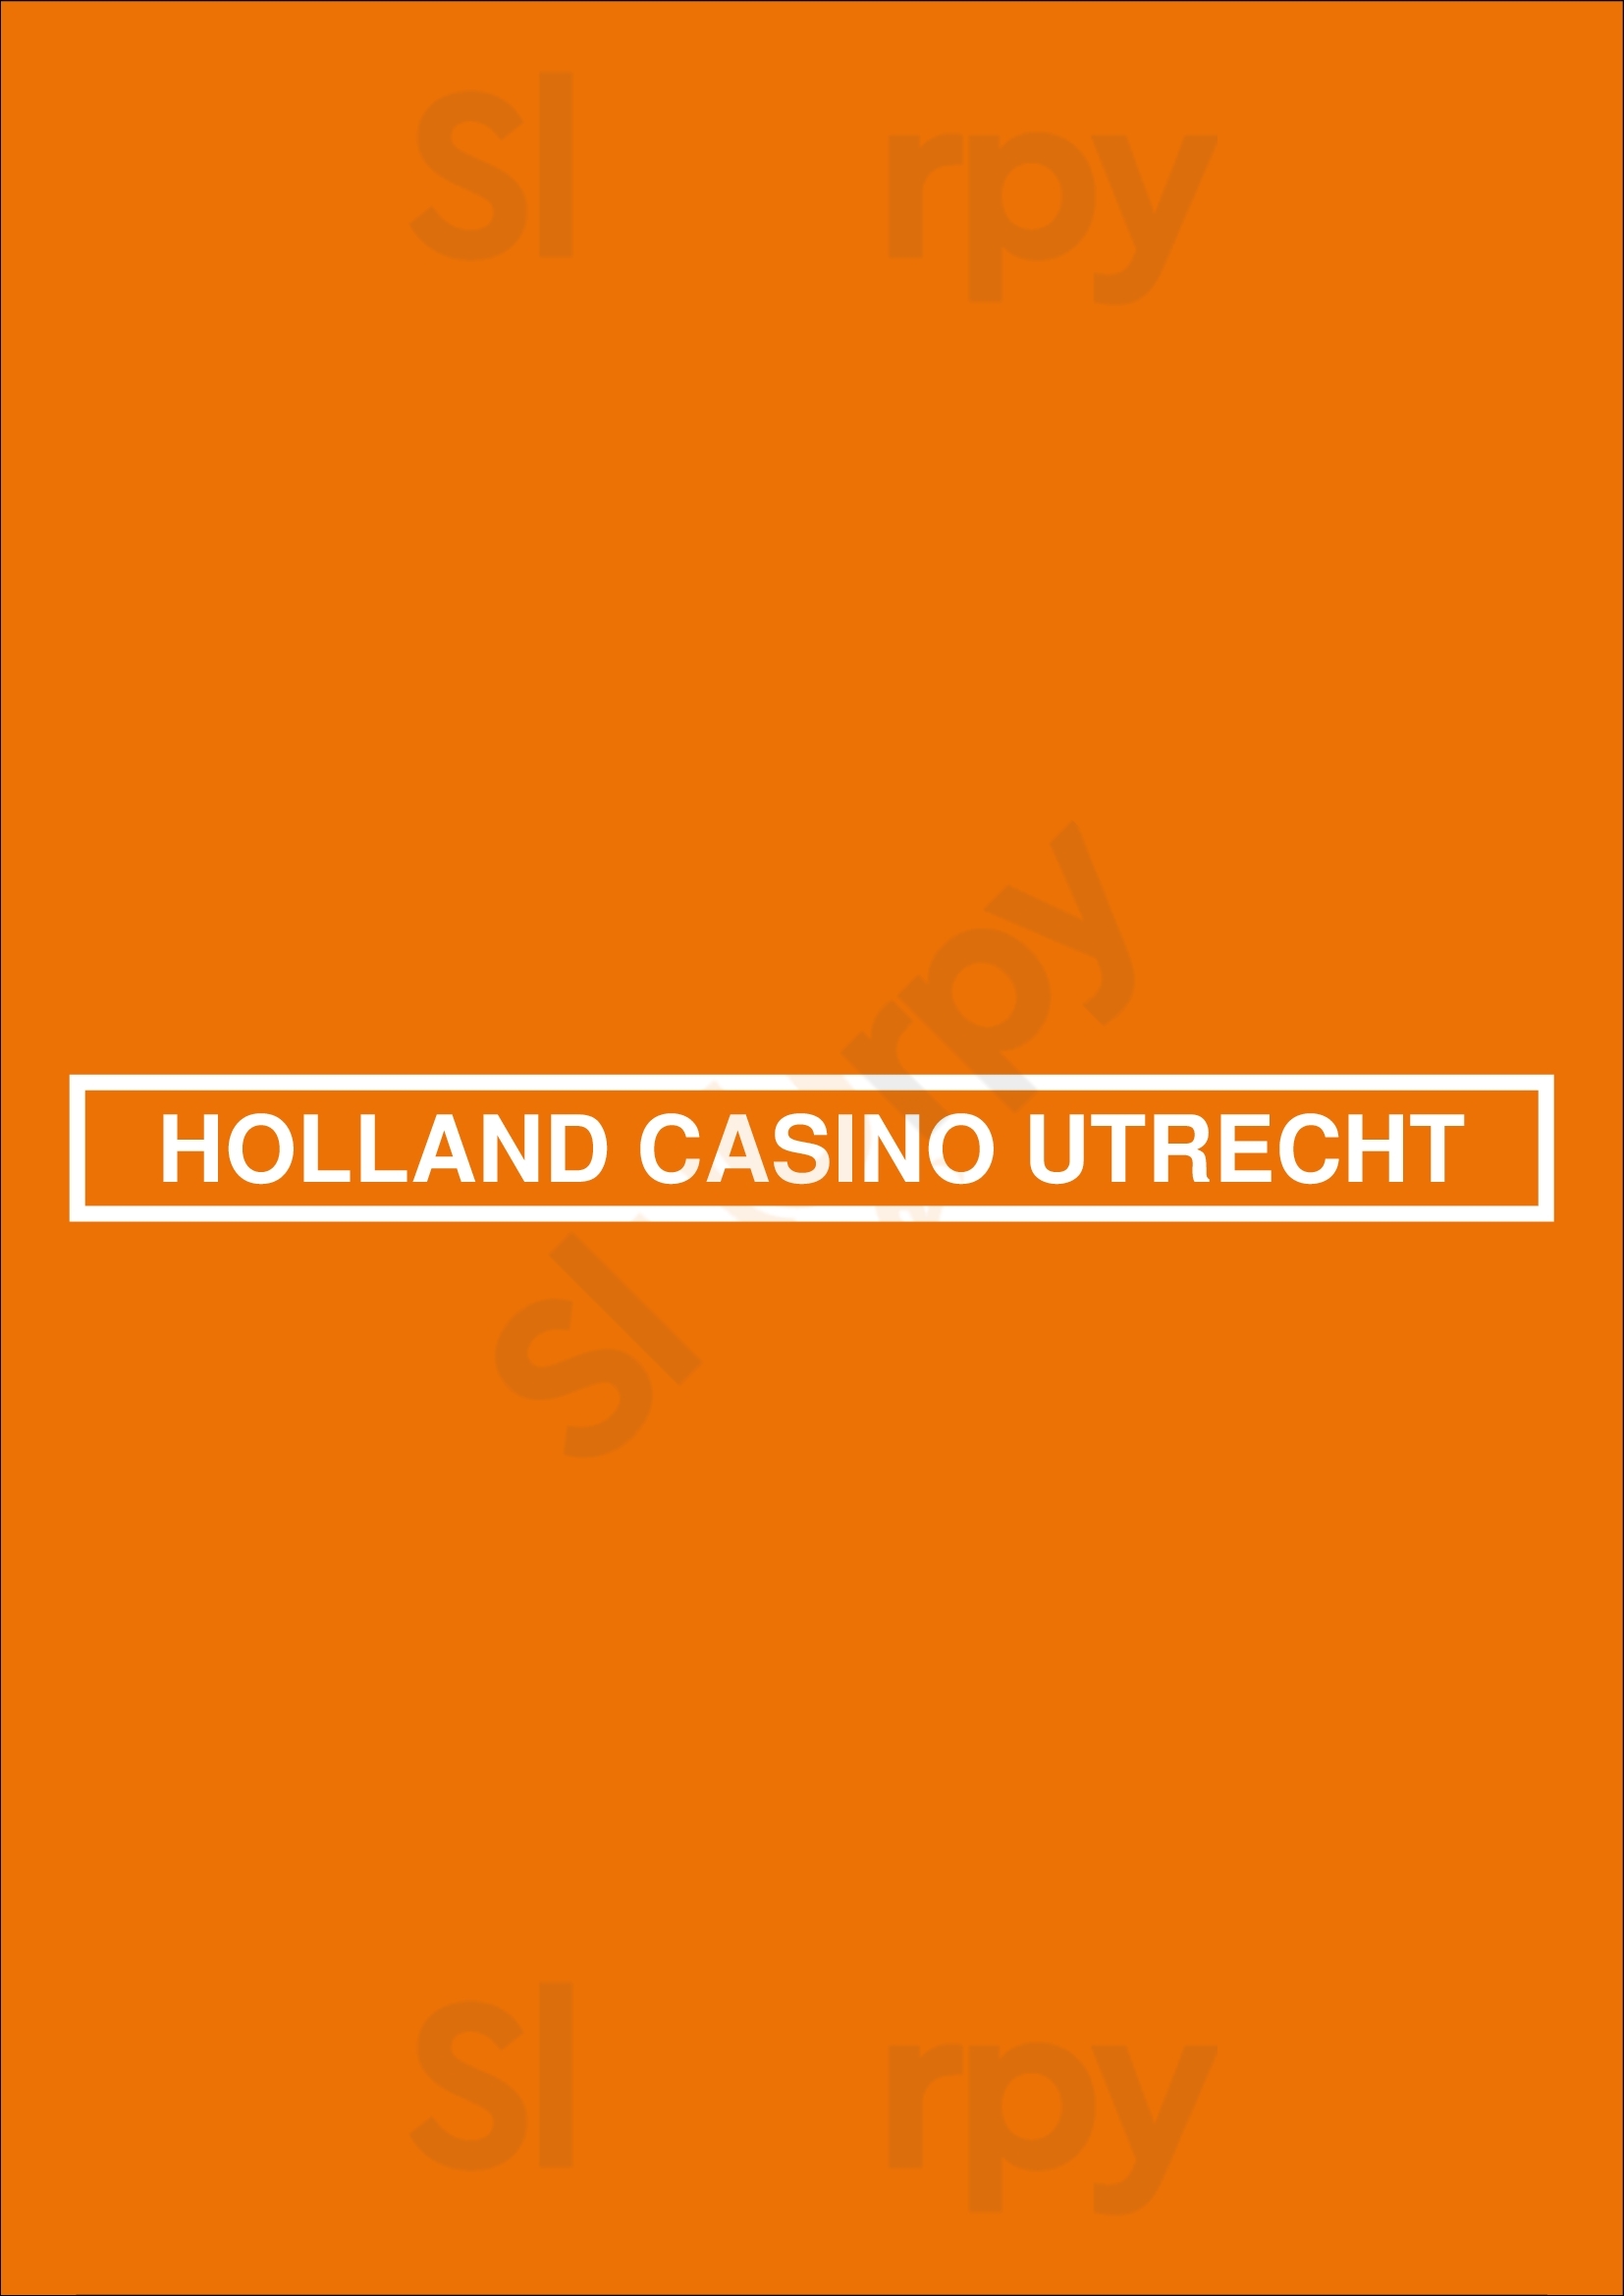 Holland Casino Utrecht Utrecht Menu - 1